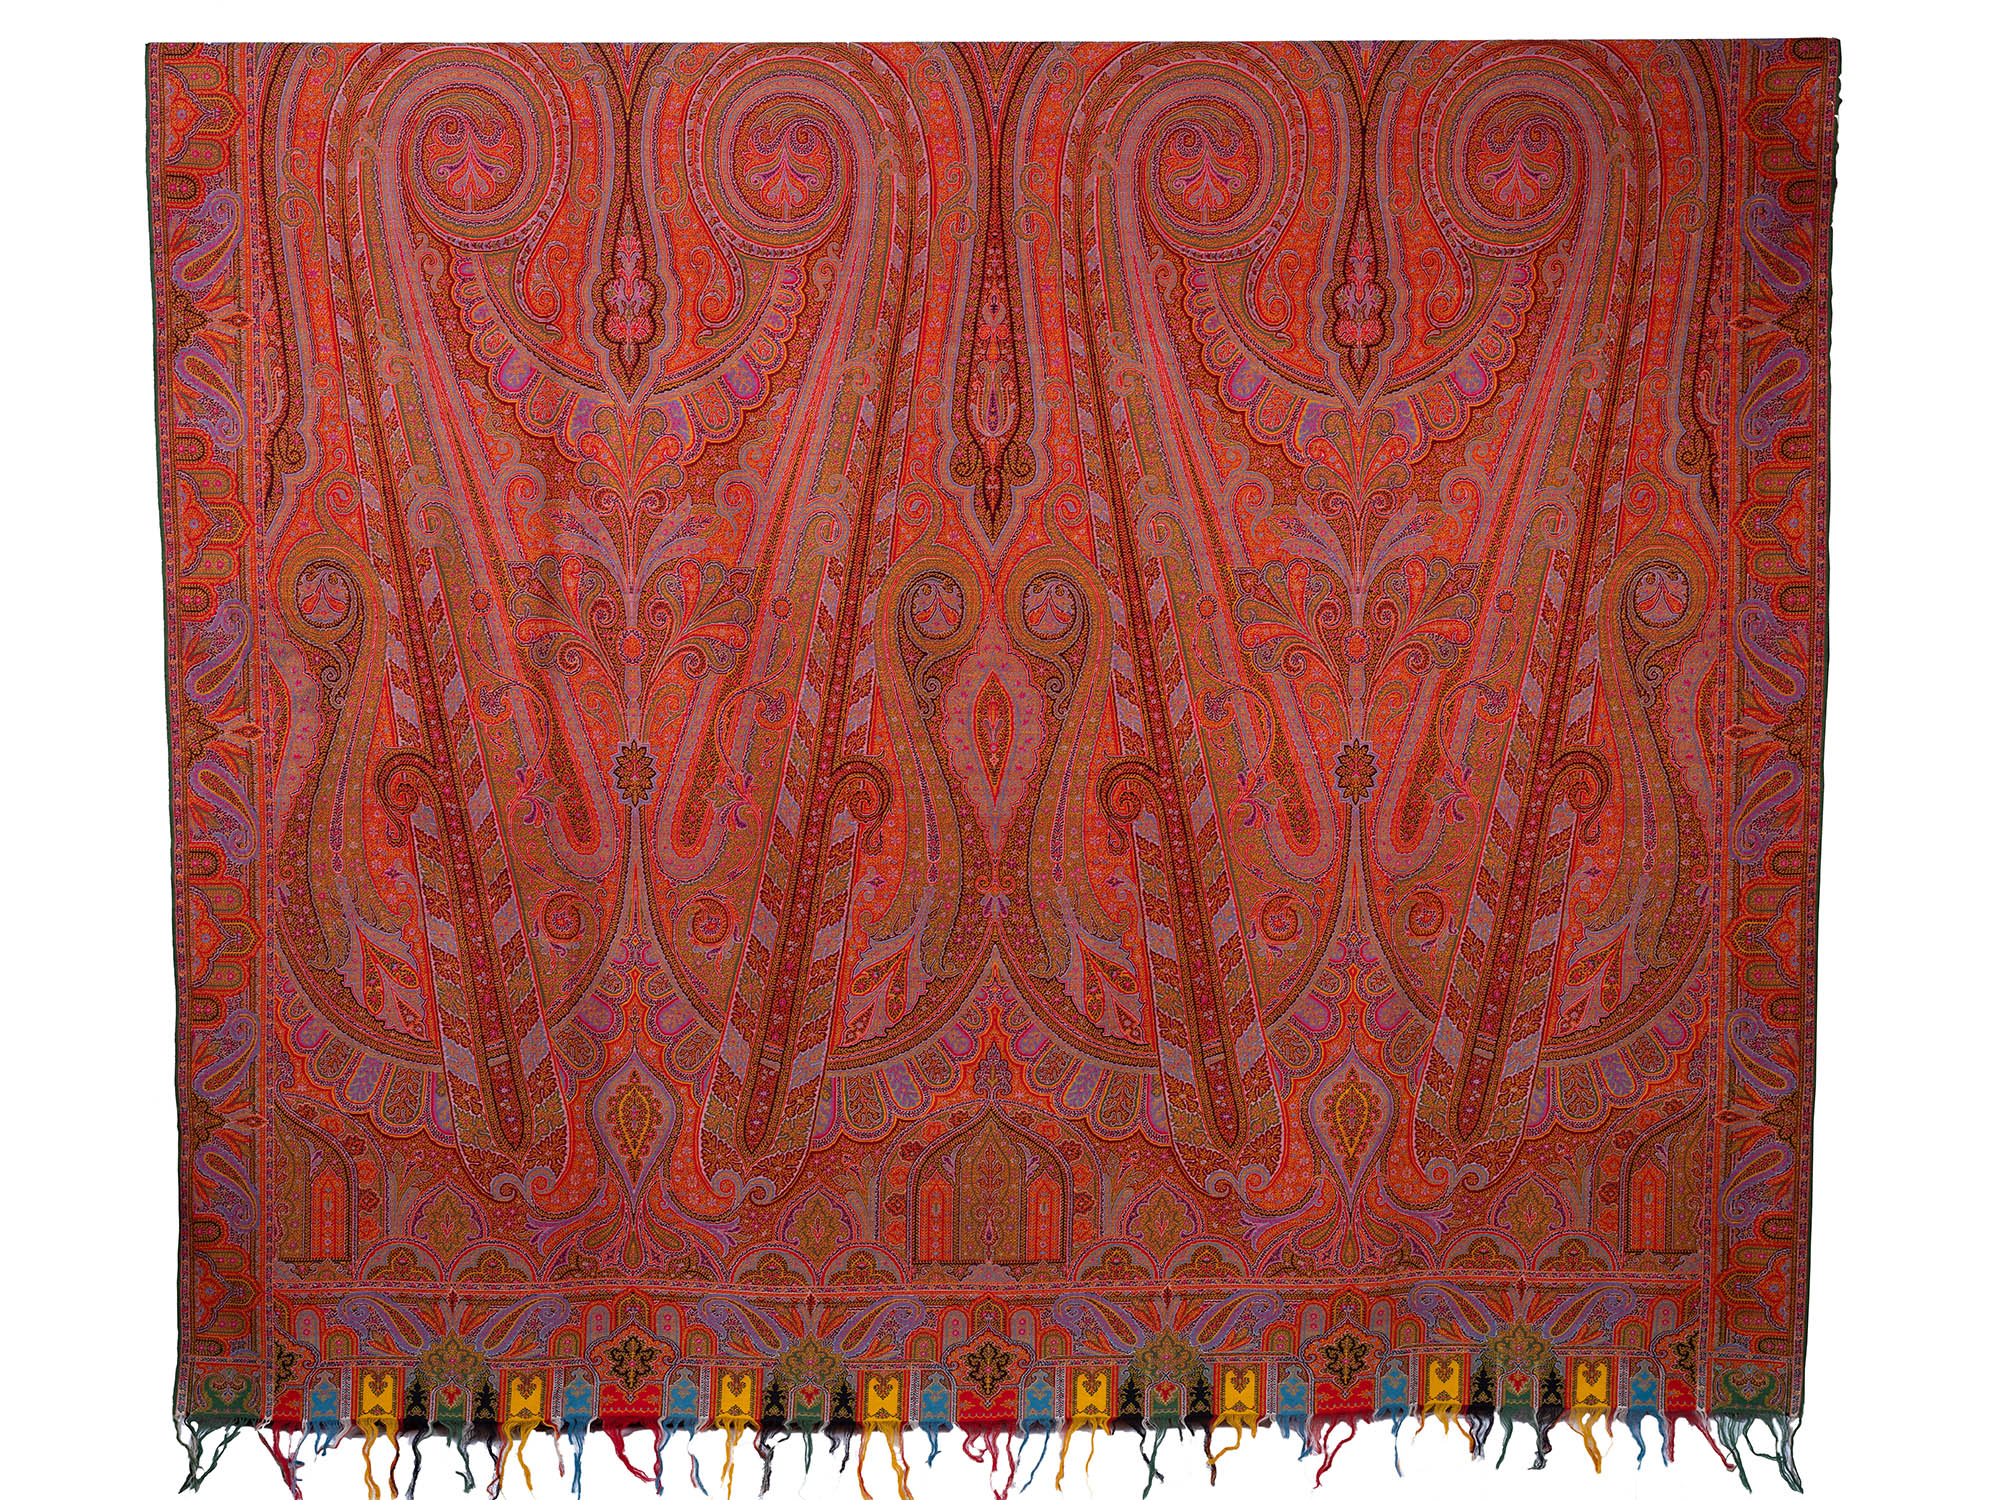 3B-Wool-12356-woven-paisley-shawl_1